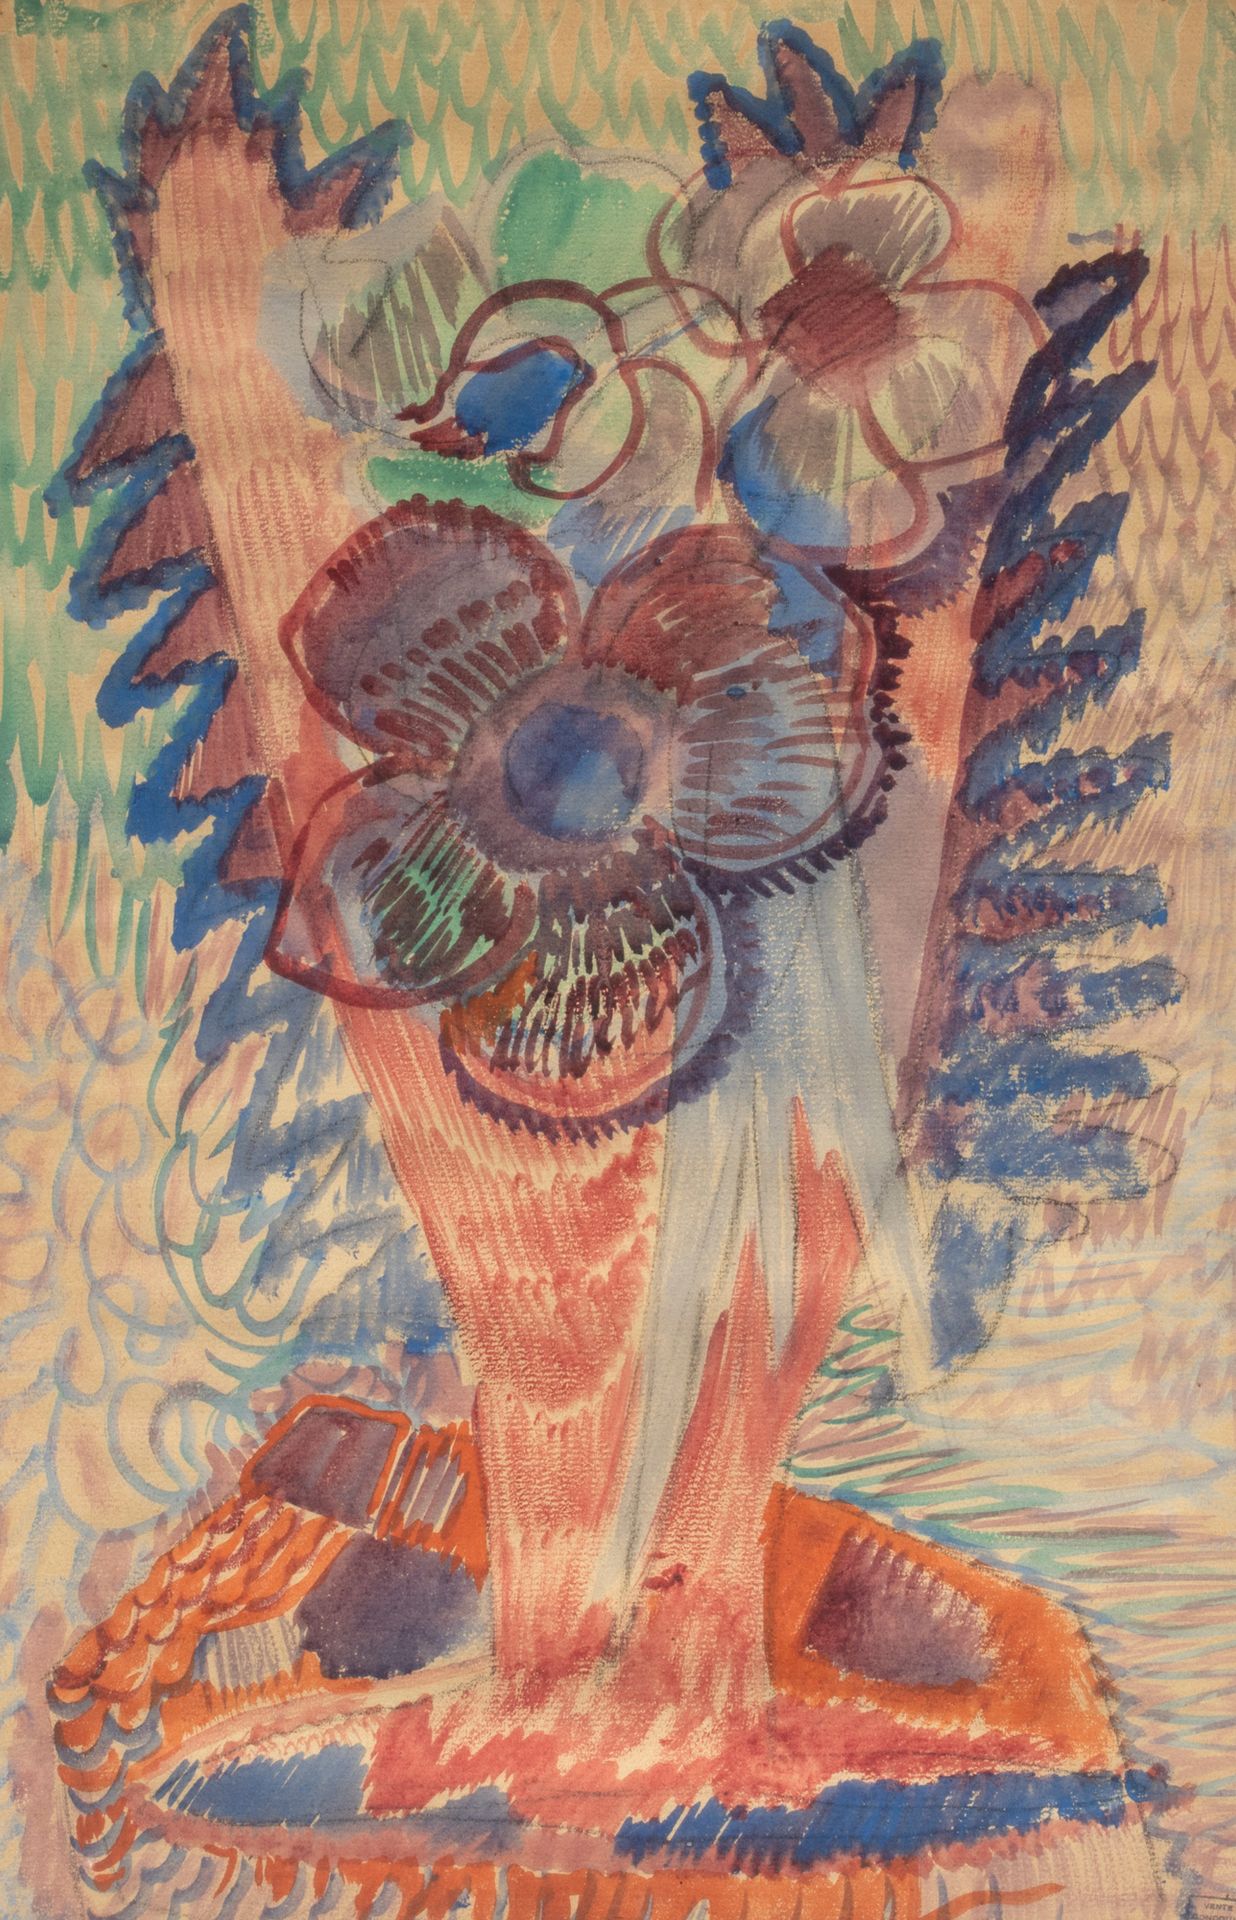 Emmanuel GONDOUIN (1883-1934) Flowers
Watercolour on paper, stamp of the Gondoui&hellip;